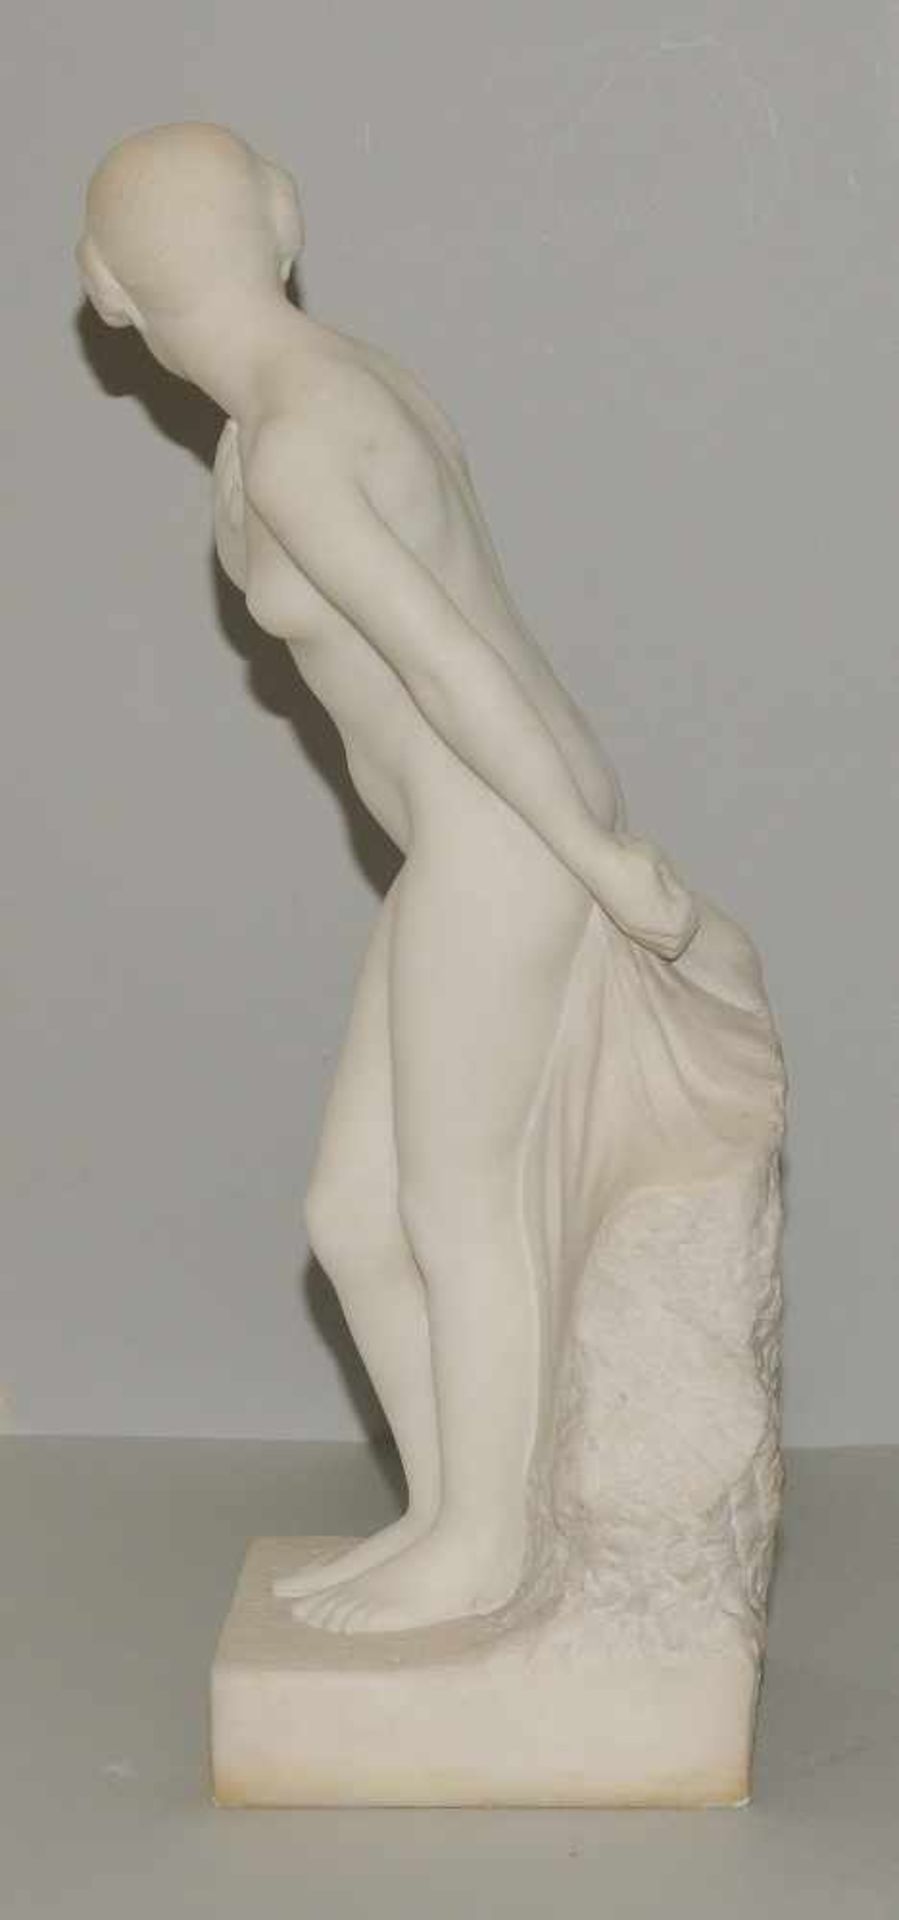 Mädchenakt, E. Molineau Um 1900. Mädchenakt. Weisser Marmor. Bezeichnet: E. Molineau. H 74 cm. - Bild 3 aus 9